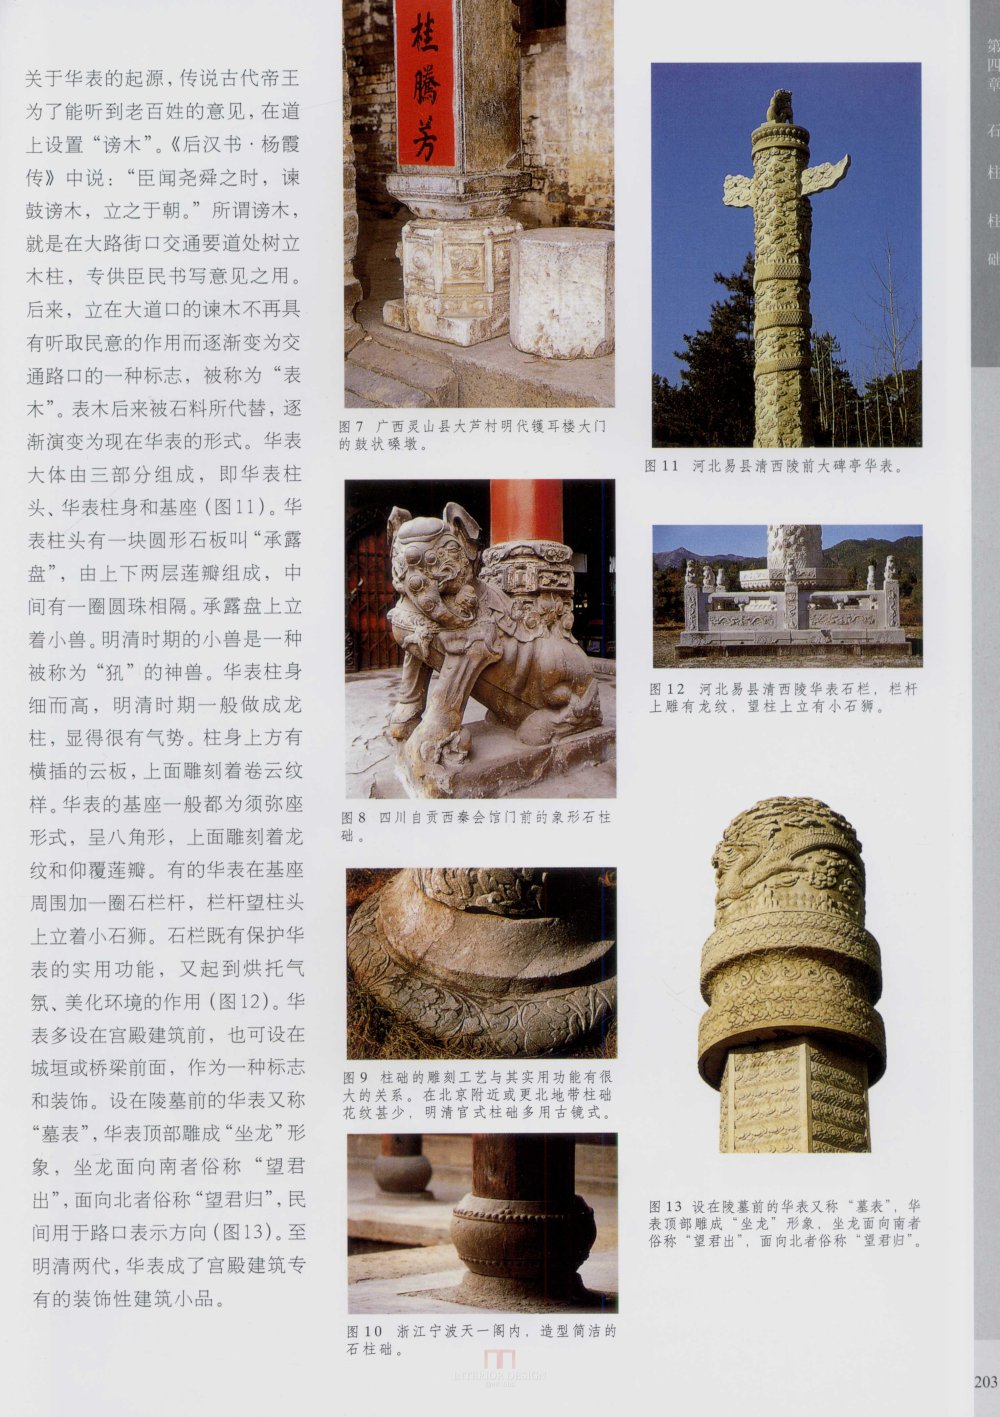 中国古代建筑 石雕_kobe 0211.jpg